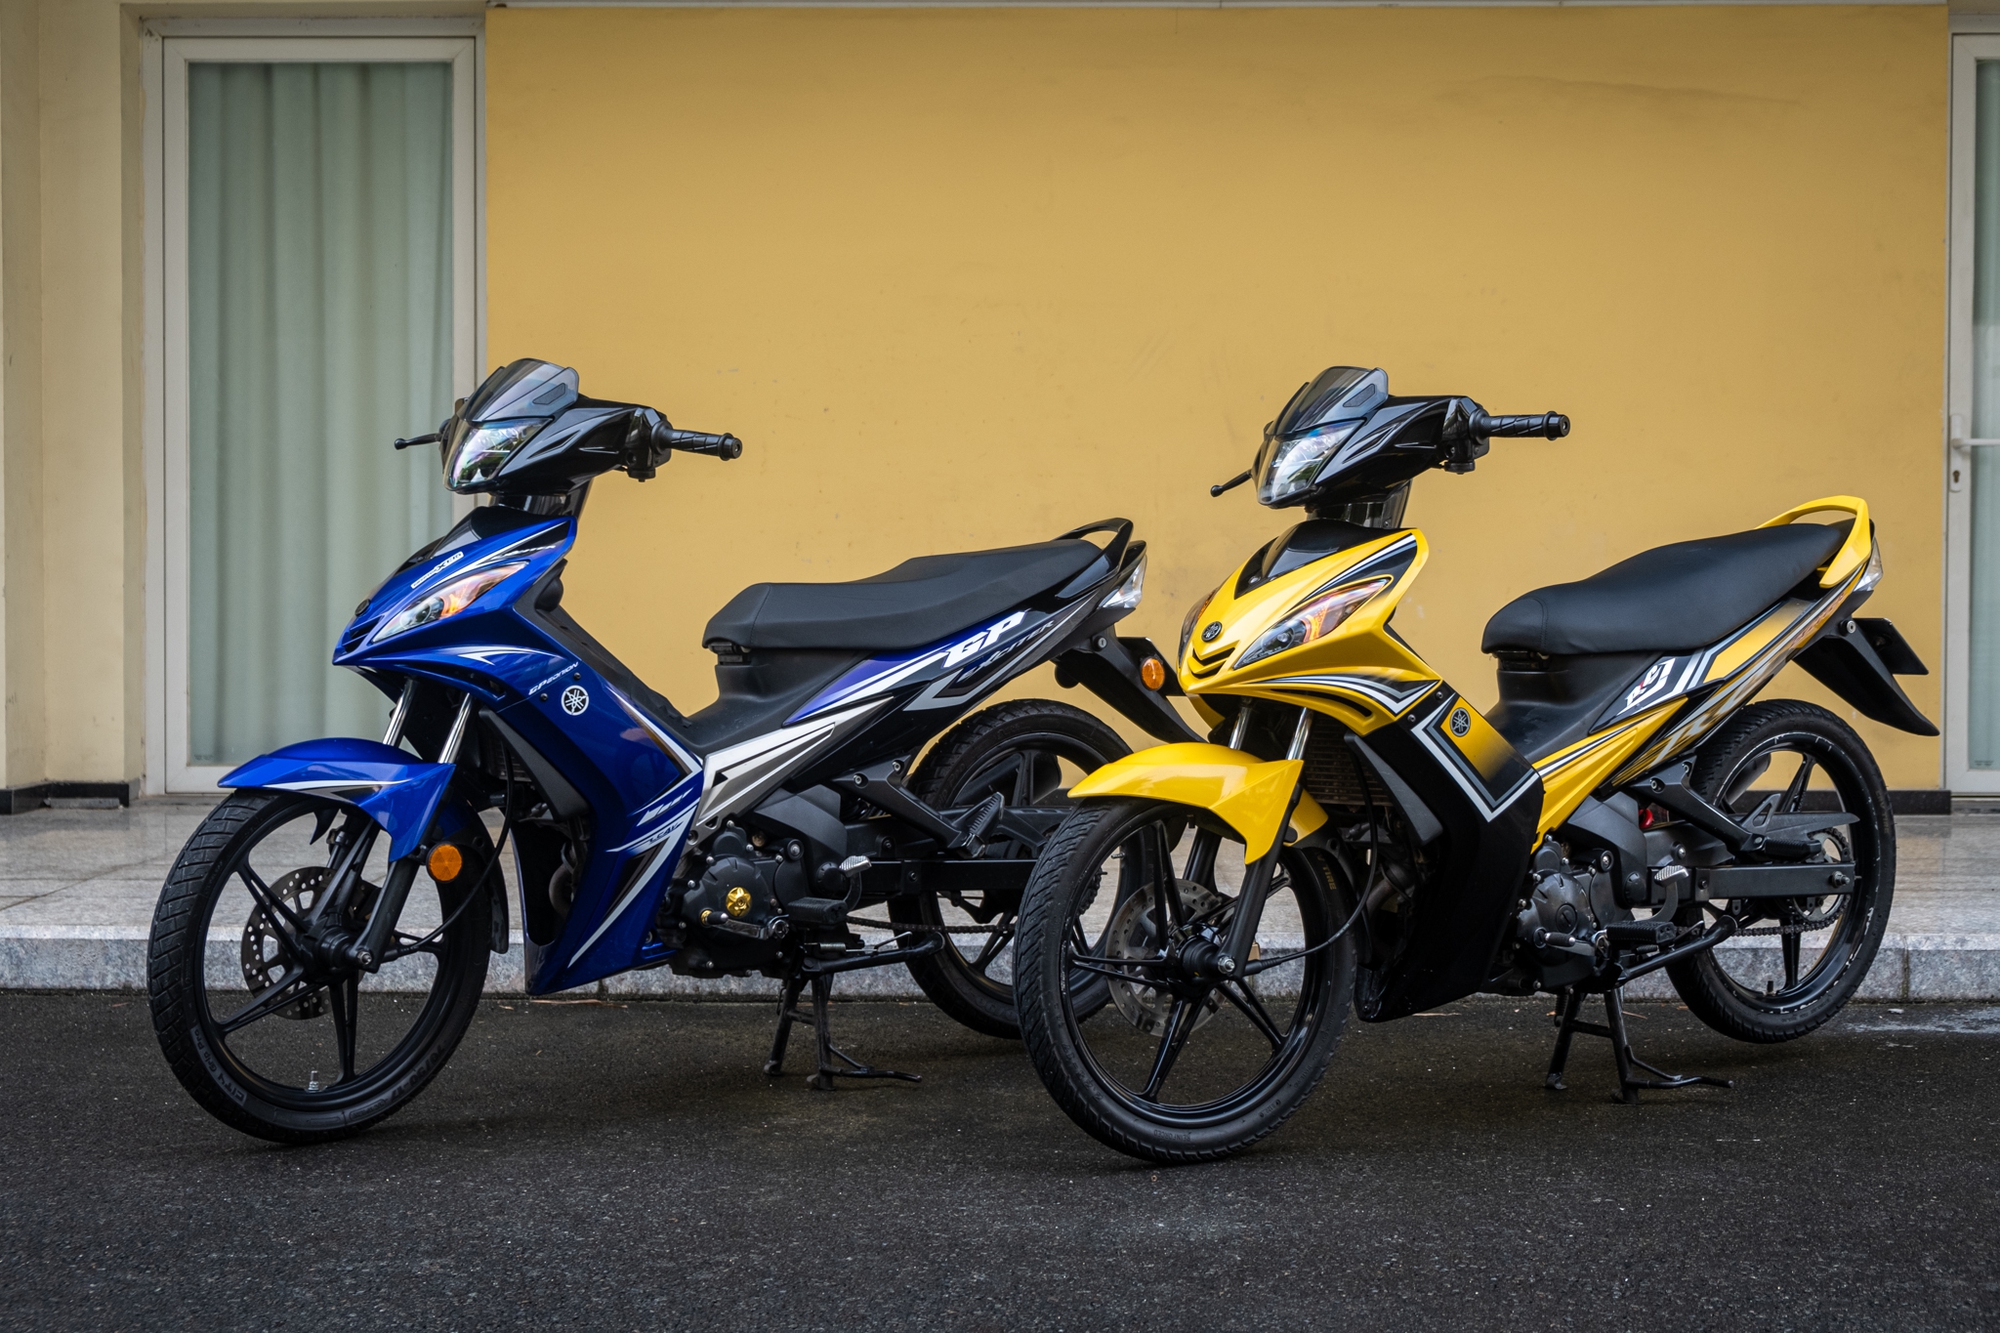 Mua bán trao đổi rao vặt xe Yamaha Exciter cũ mới chính chủ tại Thành phố  Hồ Chí Minh  Chugiongcom